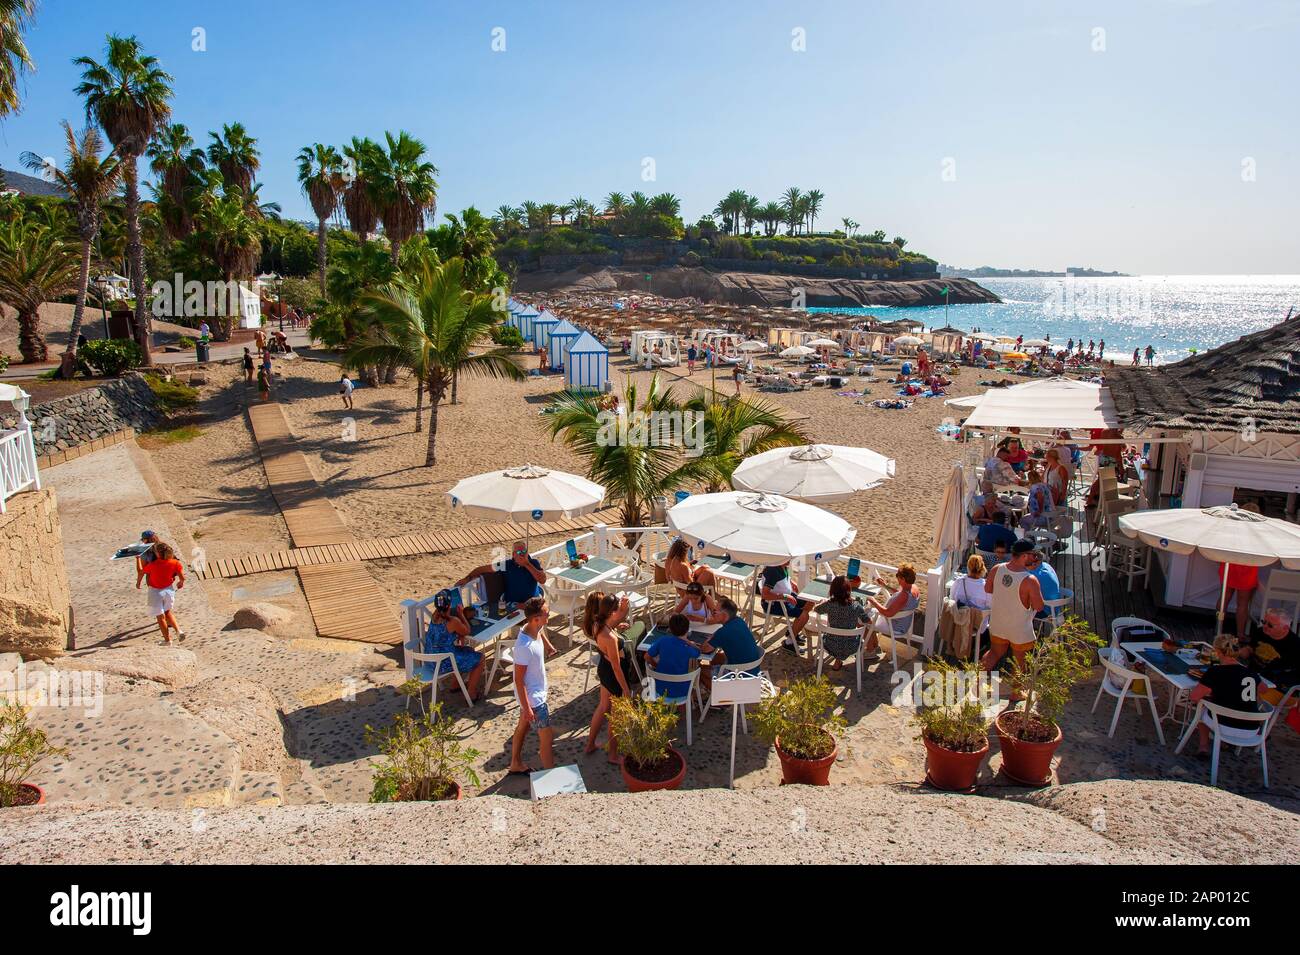 Île des Canaries Tenerife, Espagne - 27 déc, 2019 : Tourits détente sur Playa El Duque. C' l'une des plages les plus populaires de Tenerife. Banque D'Images